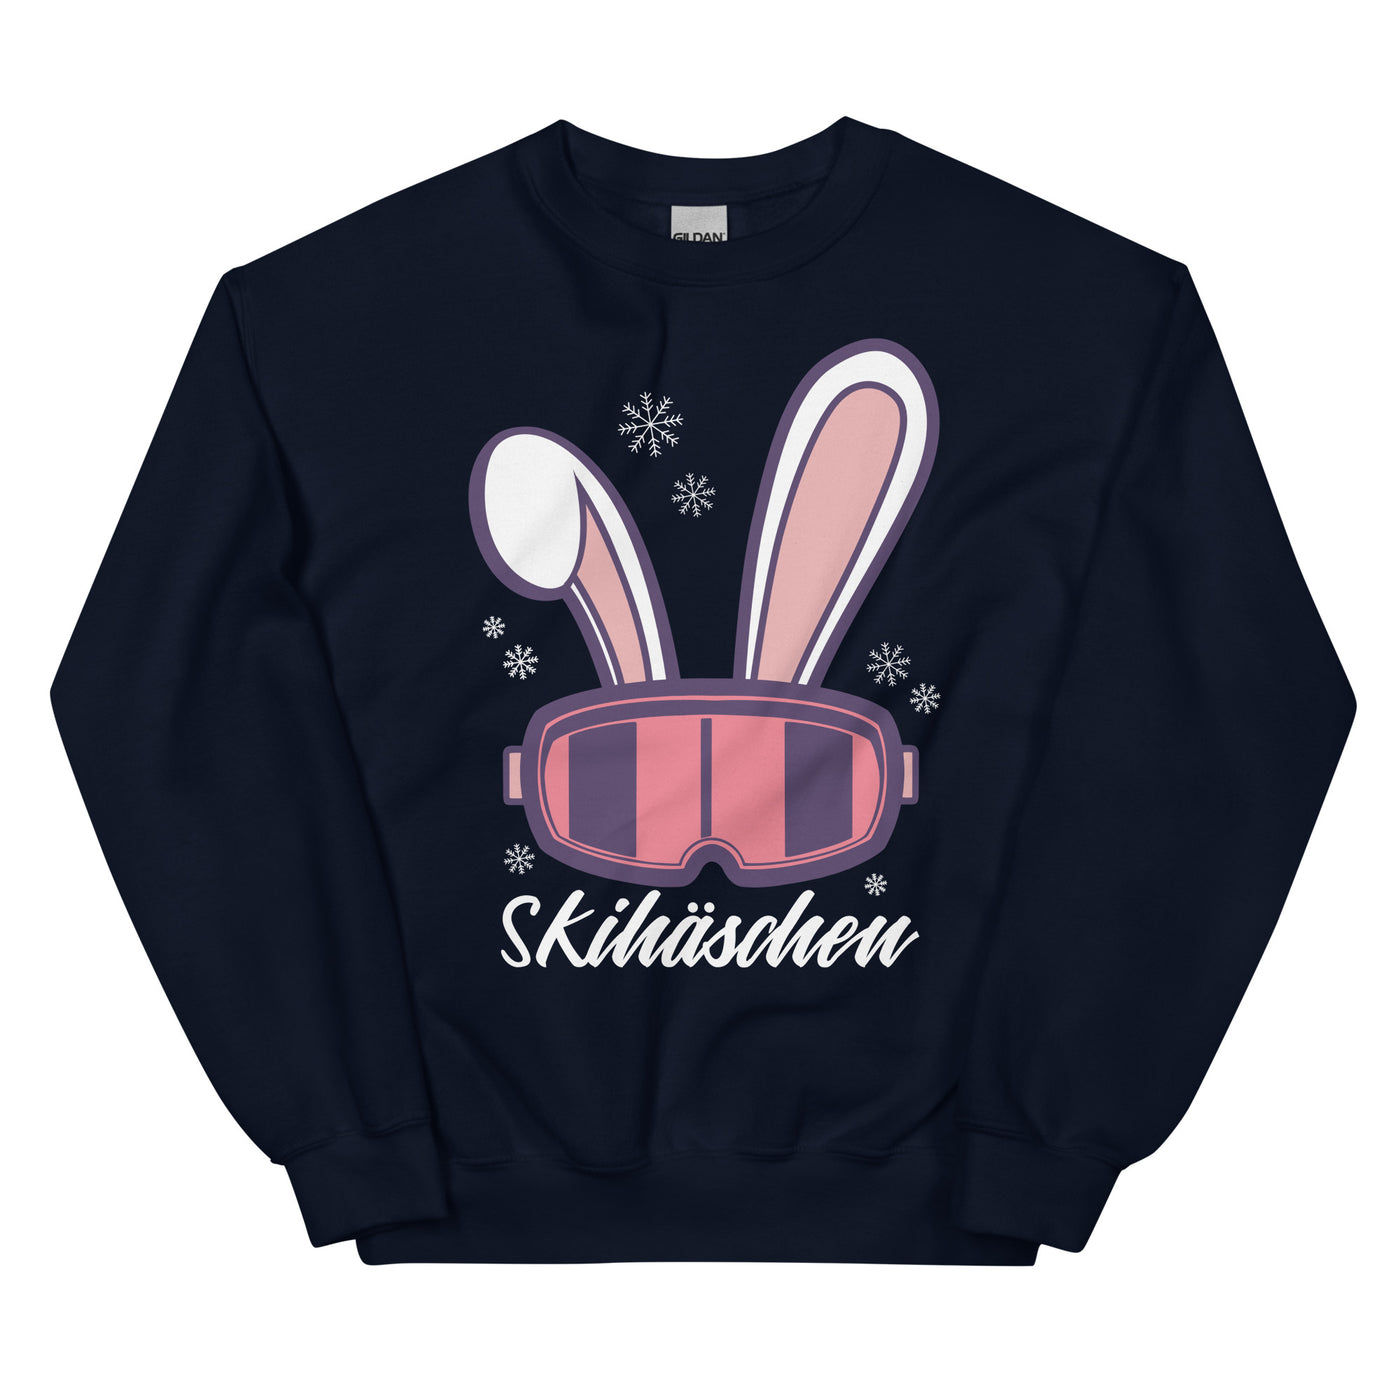 Skihäschen - (S.K) - Sweatshirt (Unisex) klettern Navy